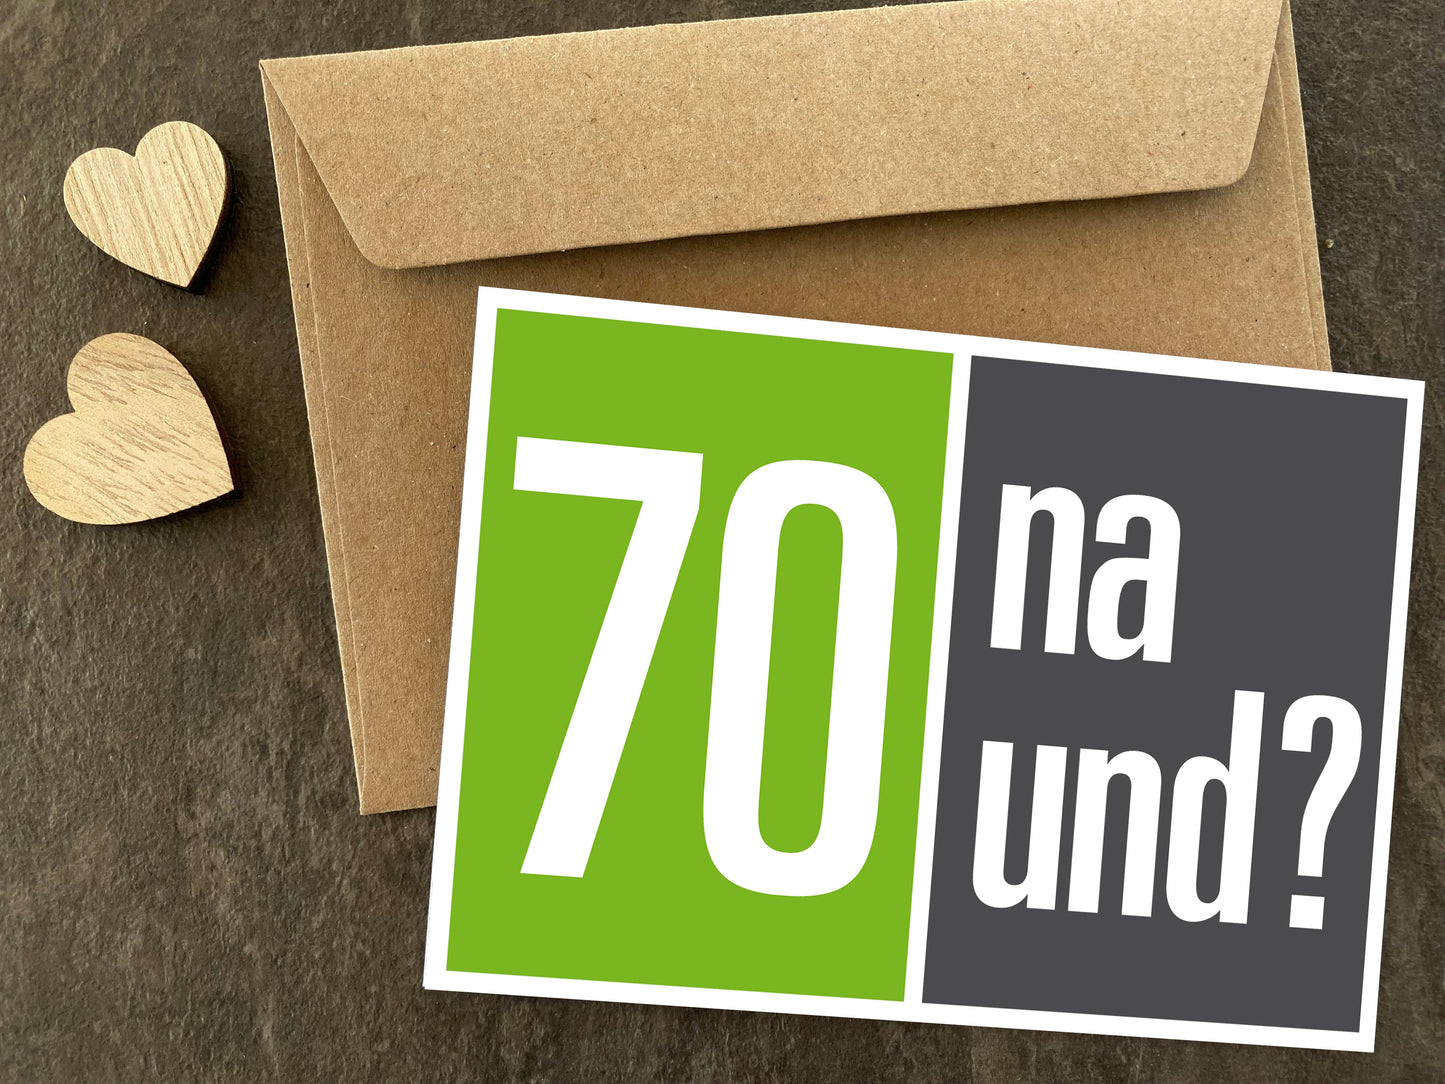 Einladung zum 70. Geburtstag: 70 na und?